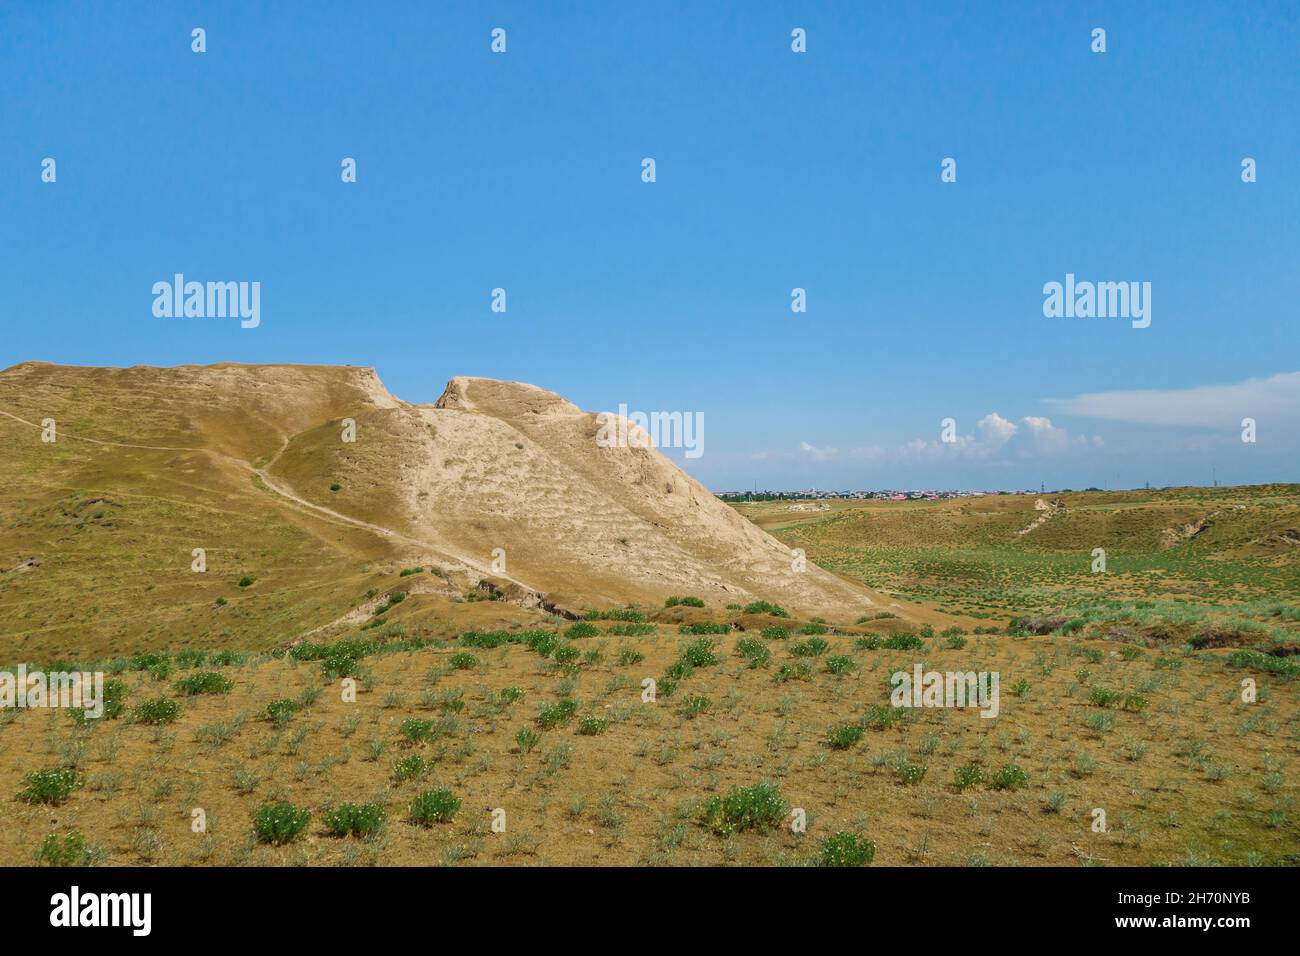 Panorama de Afrasiyab, el lugar más antiguo de Samarcanda, Uzbekistán. Lo que parece ser colina a la izquierda es la antigua fortaleza y palacio, fundada en VII aC. Foto de stock